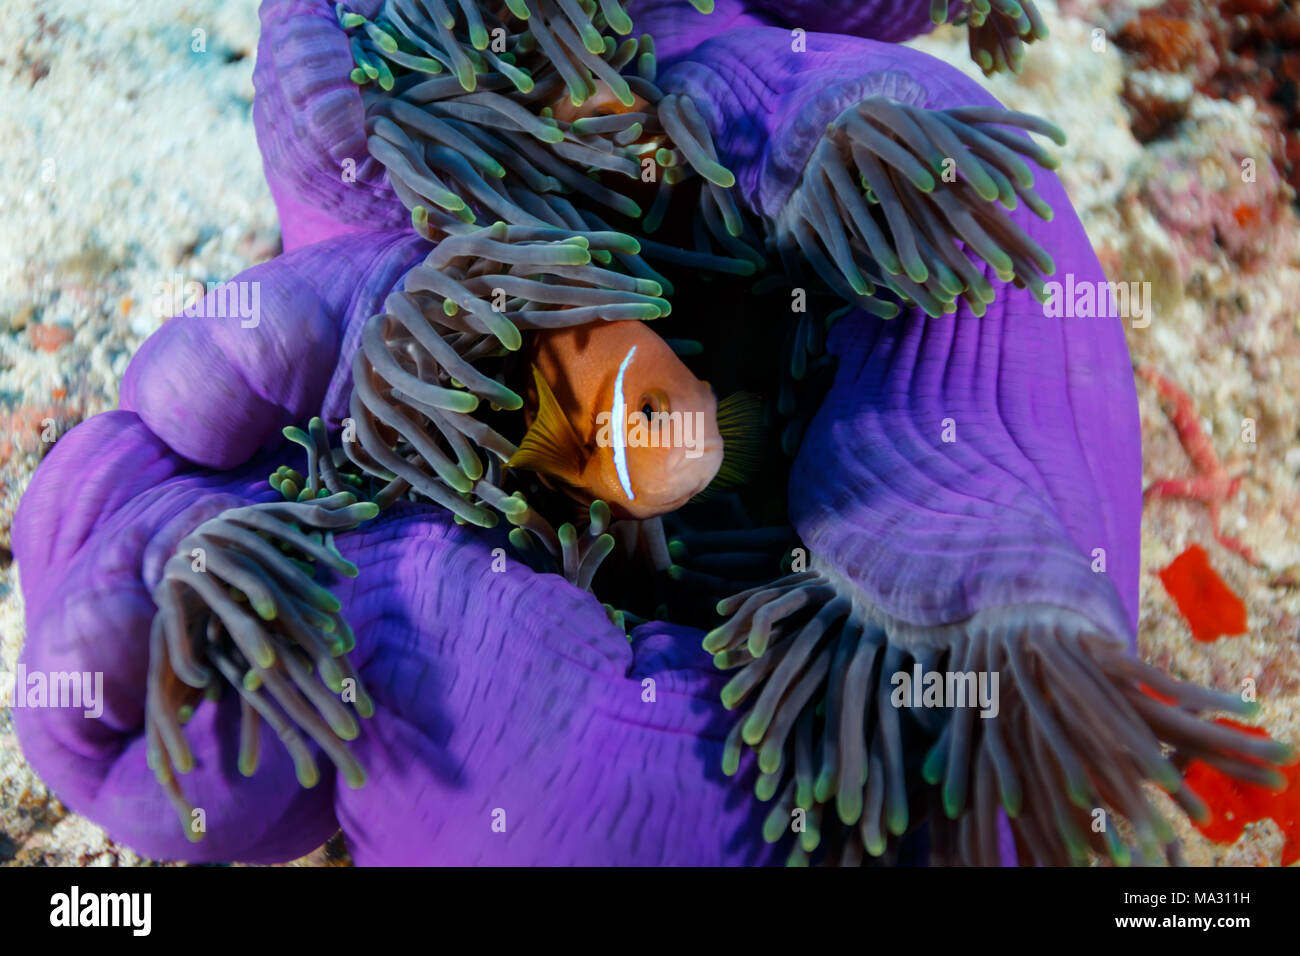 Clownfisch, Anemonenfischen, versteckt in riesigen fluoreszierenden lila Seeanemone, Cnidaria gigantea Stockfoto